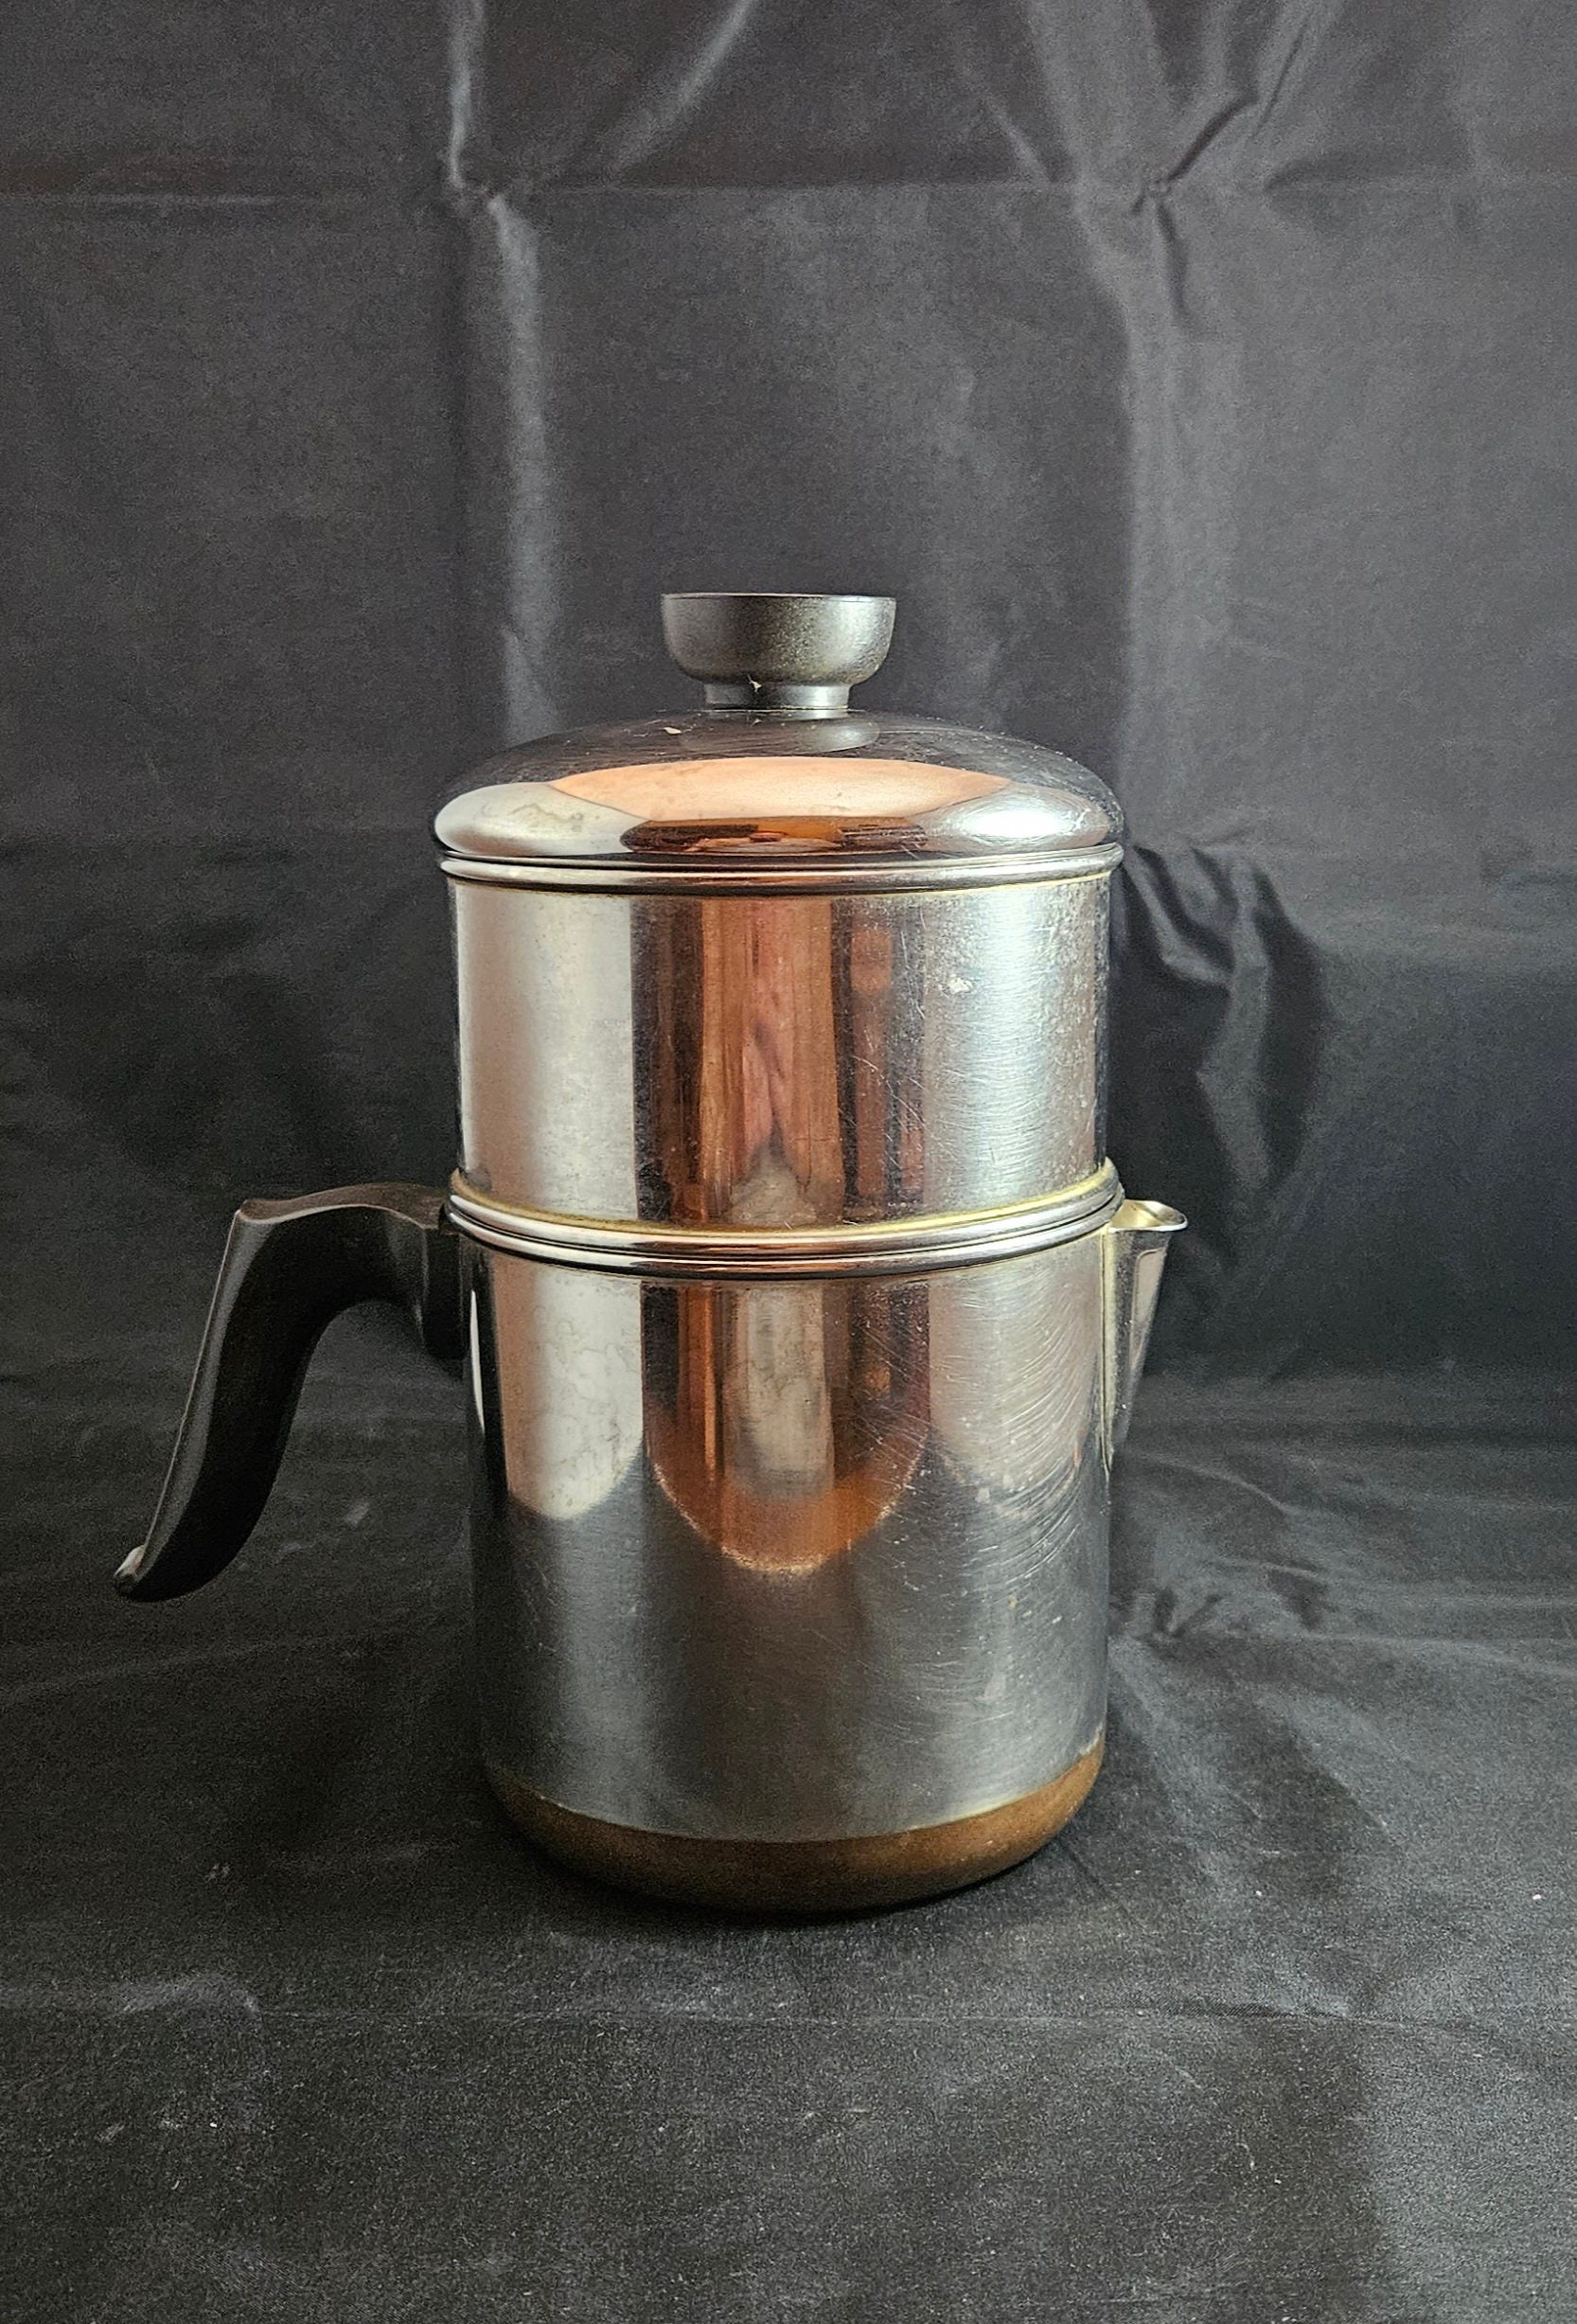 Pure copper saucepan with pouring spout, 1.5 qt – Cuisine Romefort